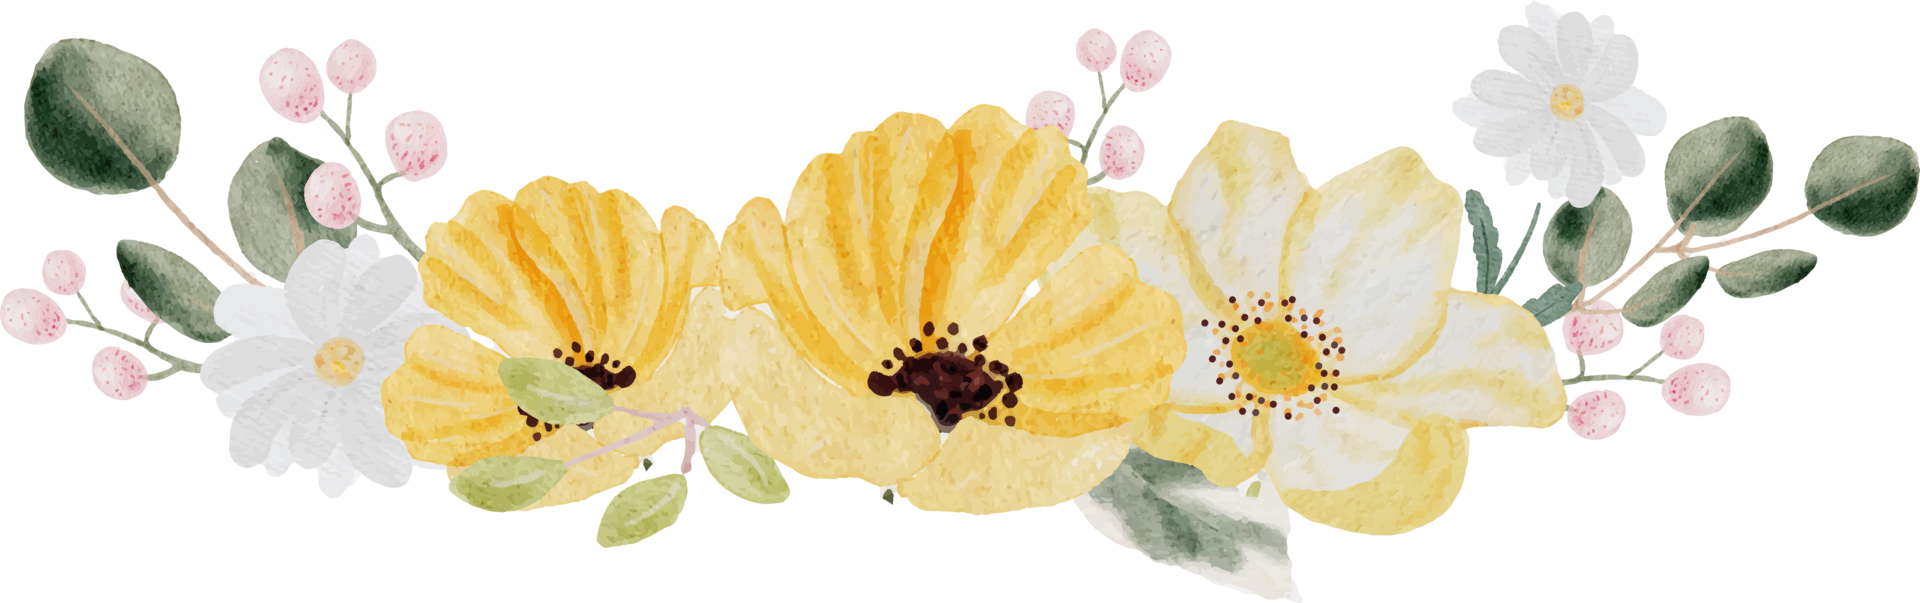 acuarela dibujada a mano colorida flor de primavera y corona de ramo de hojas verdes png